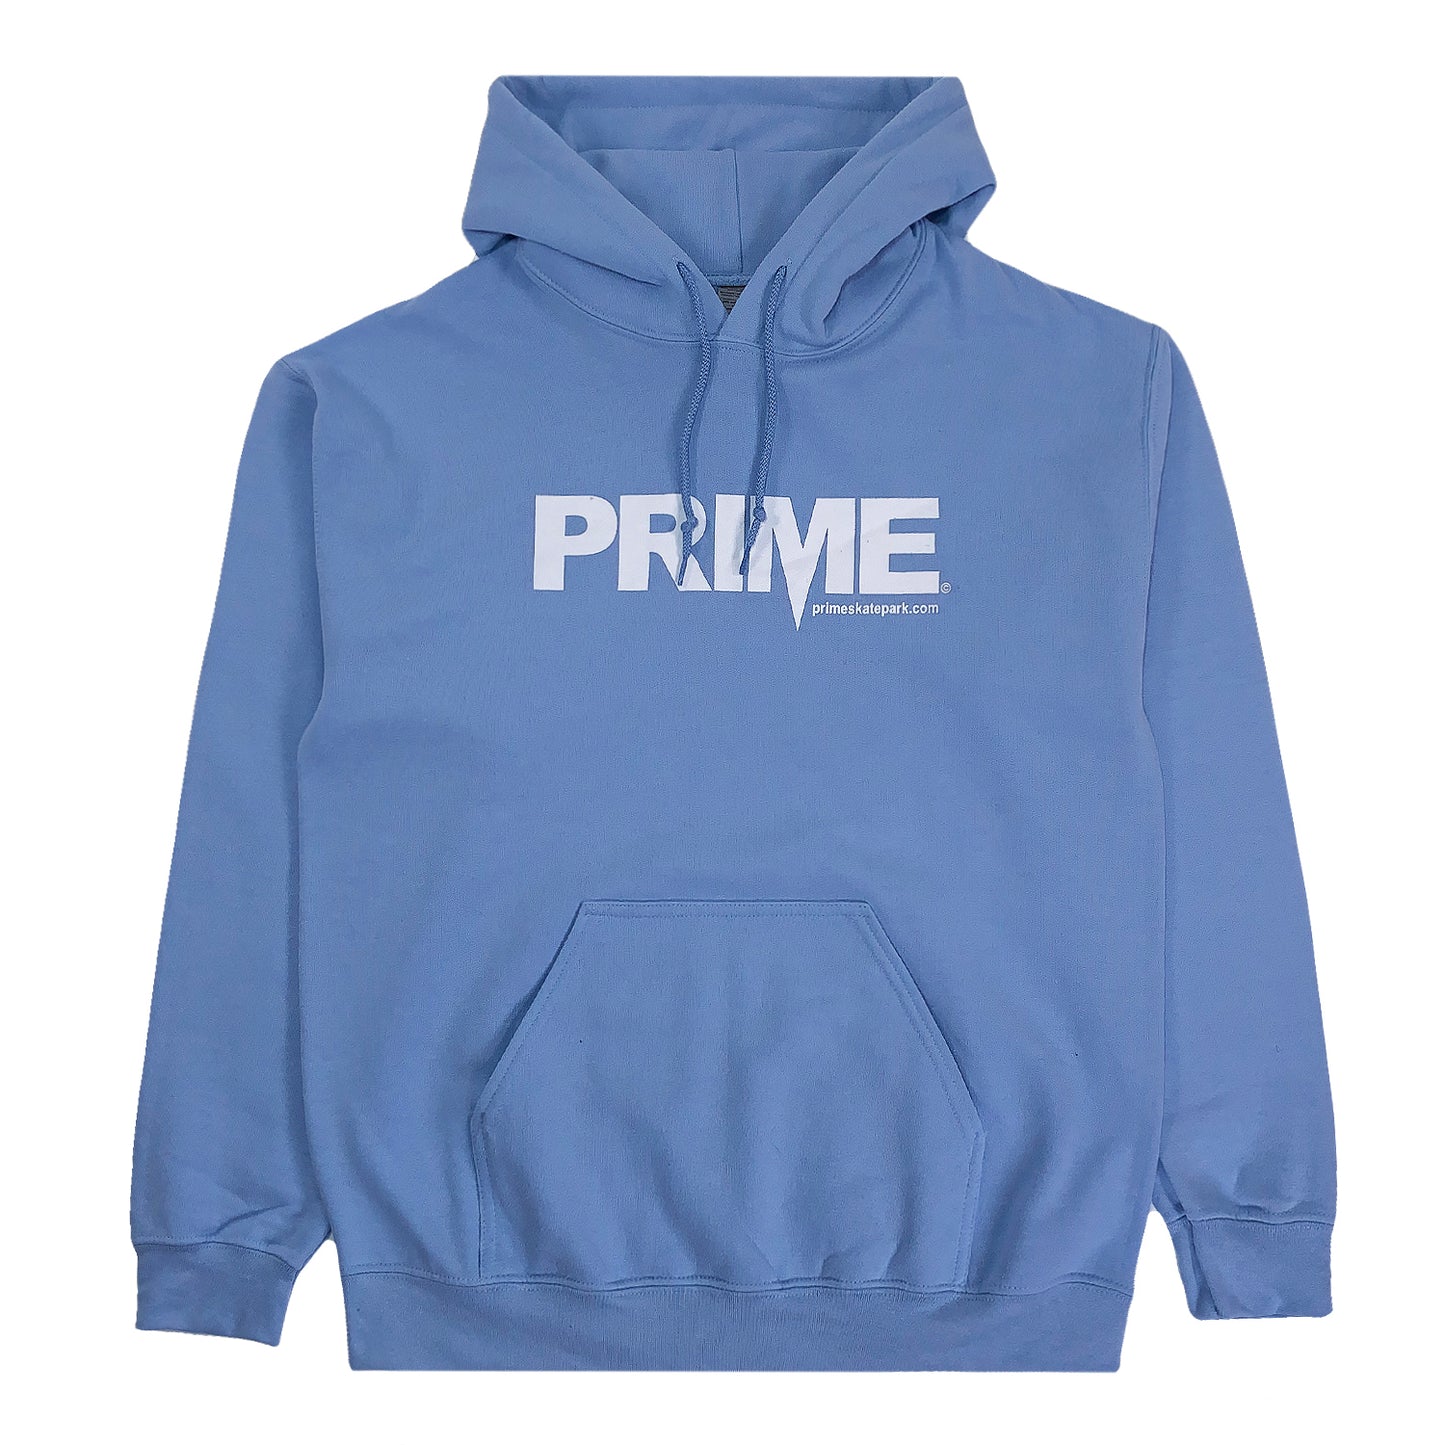 Prime Delux OG Logo Hooded Sweat - Light Blue / White - Prime Delux Store